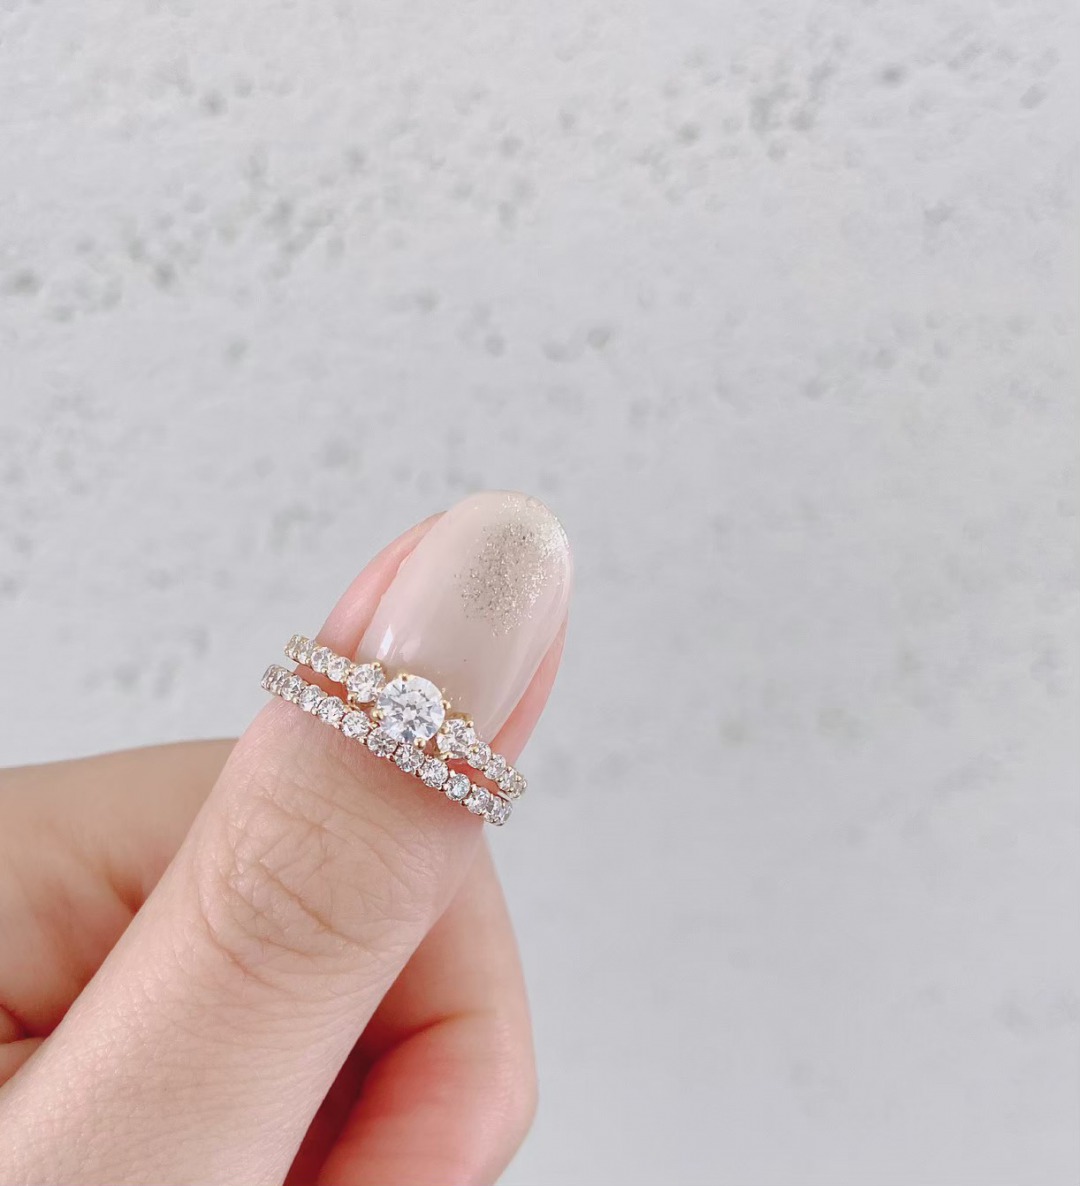 銀座で人気のダイヤモンドラインが華やかで美しい婚約指輪